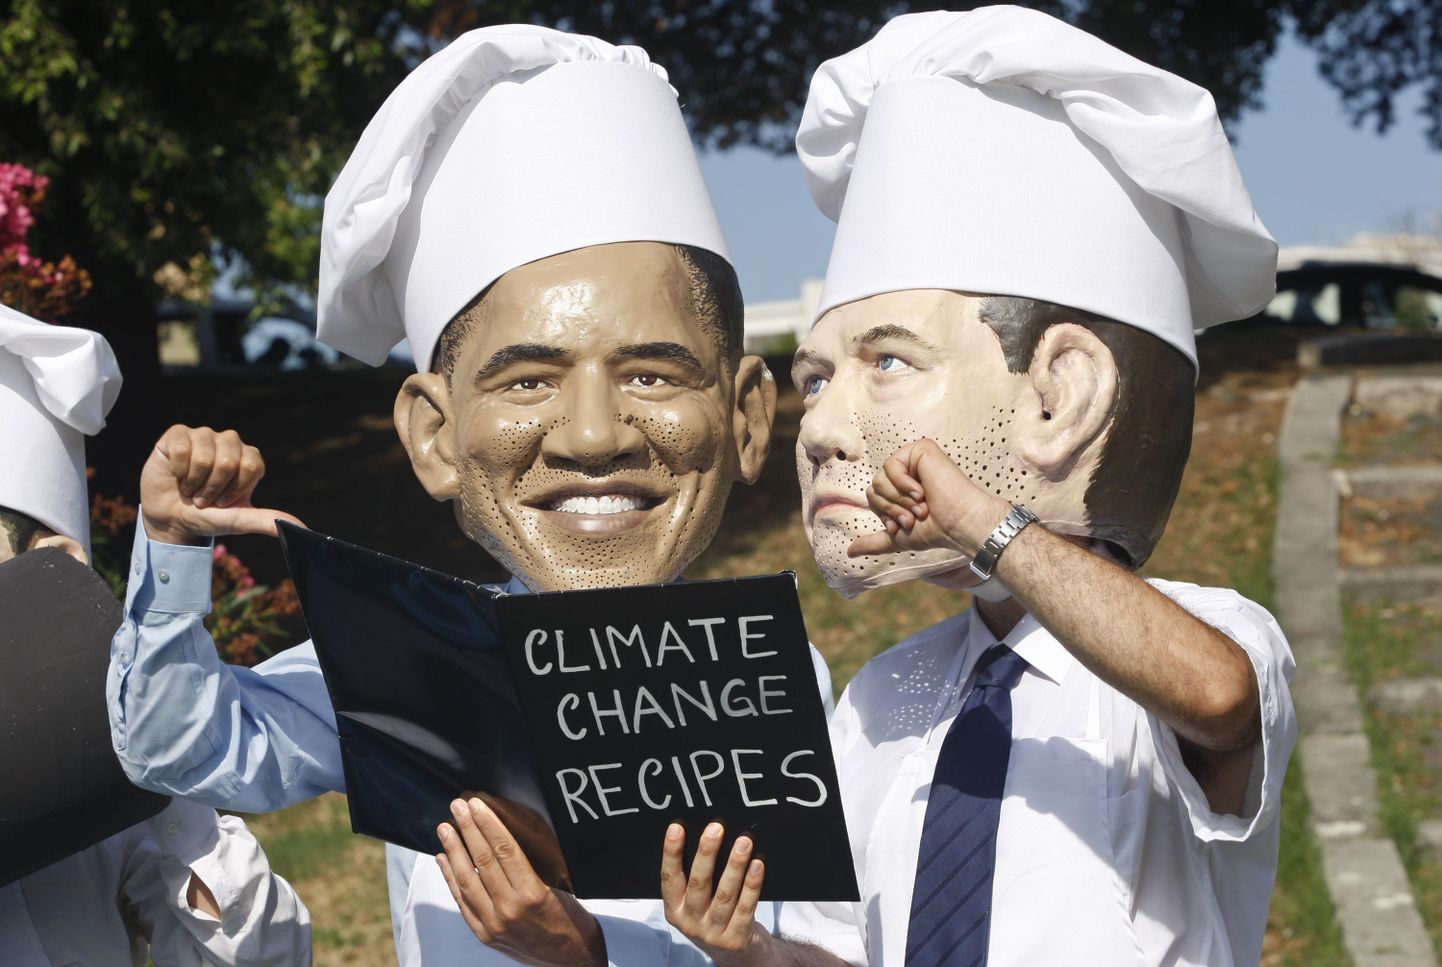 Heategevusorganisatsooni Oxfam liikmed kannavad Venemaa presidendi Dmitri Medvedevi ja USA presidendi Barack Obama maske kliimamuutuste tähtsustamisele suunatud meeleavaldusel Itaalias.